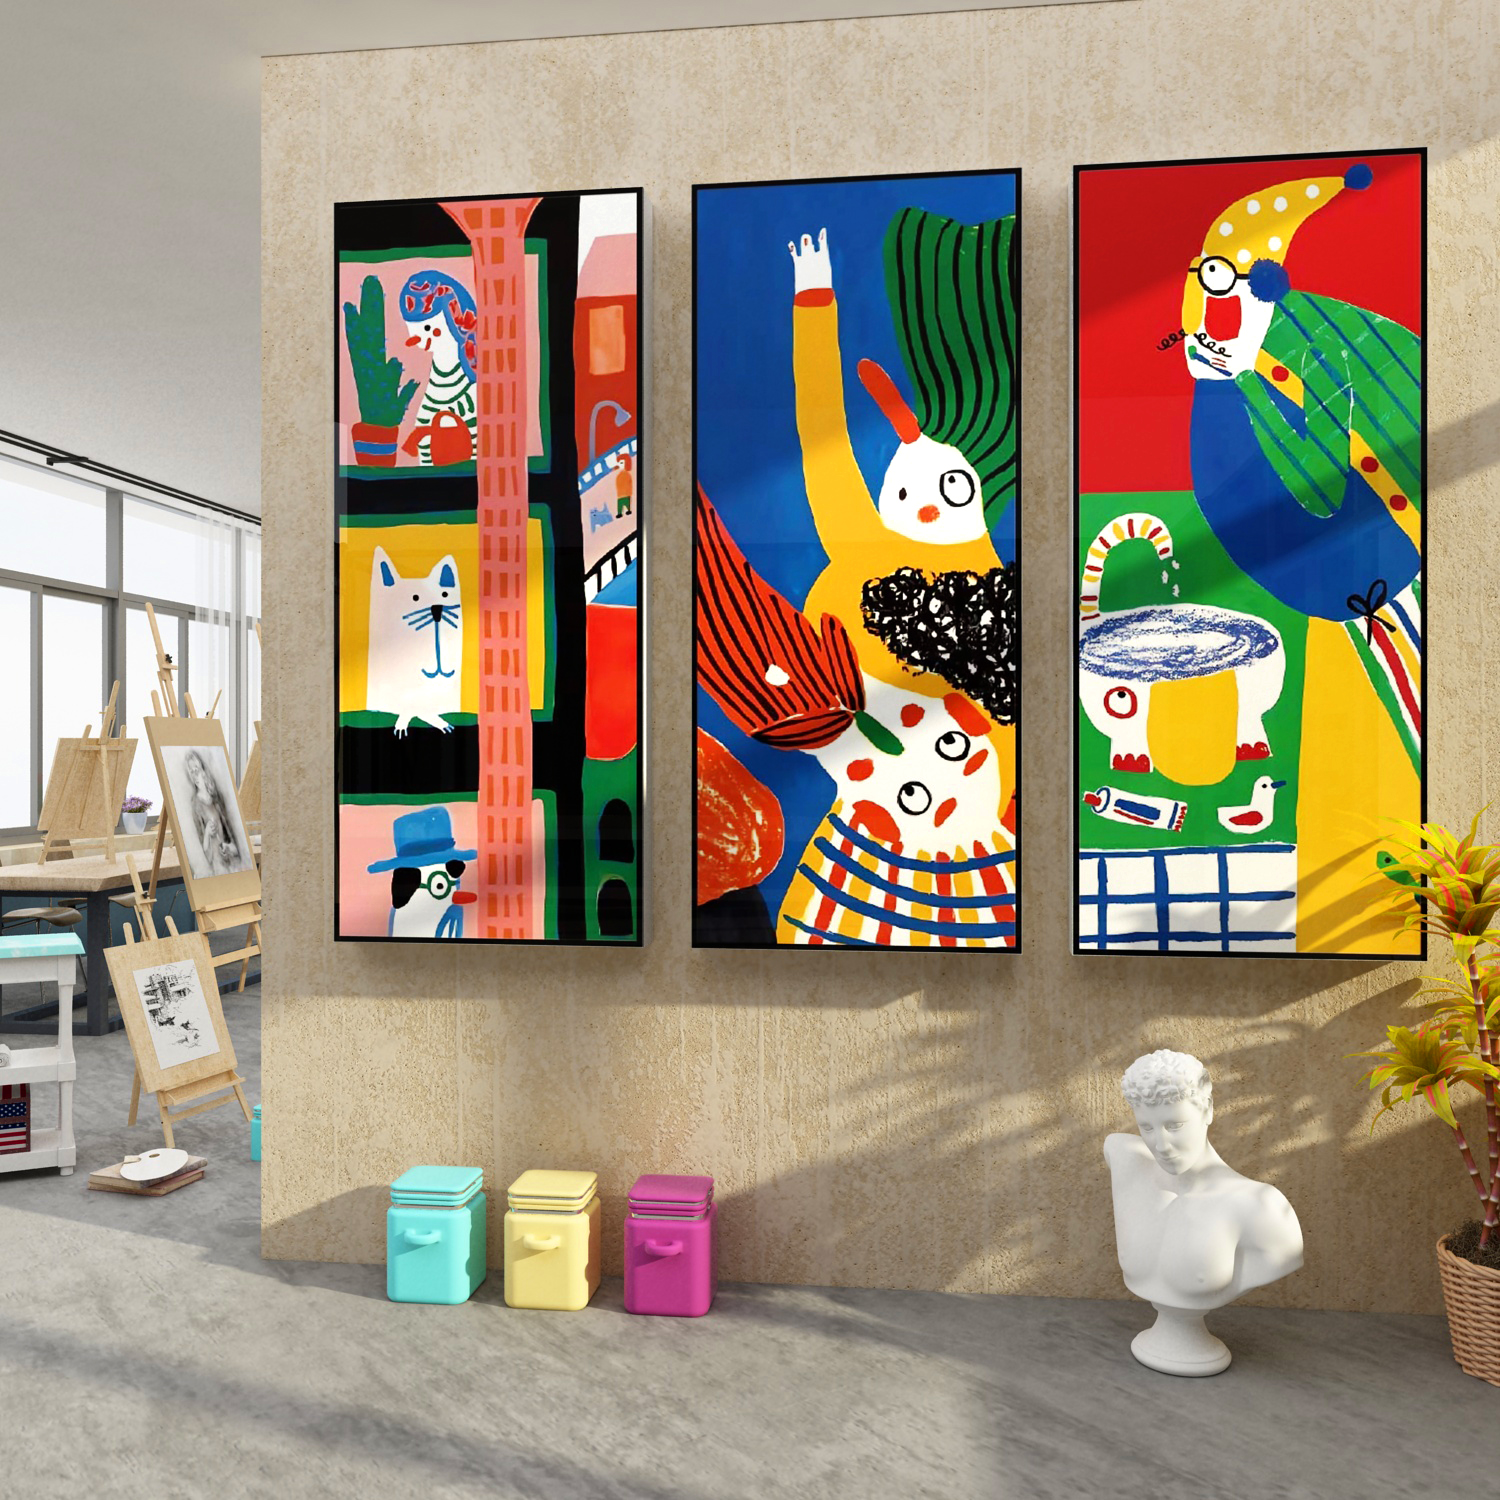 画室布置美术室素描班级墙面装饰文化环创贴纸幼儿园教育培训机构